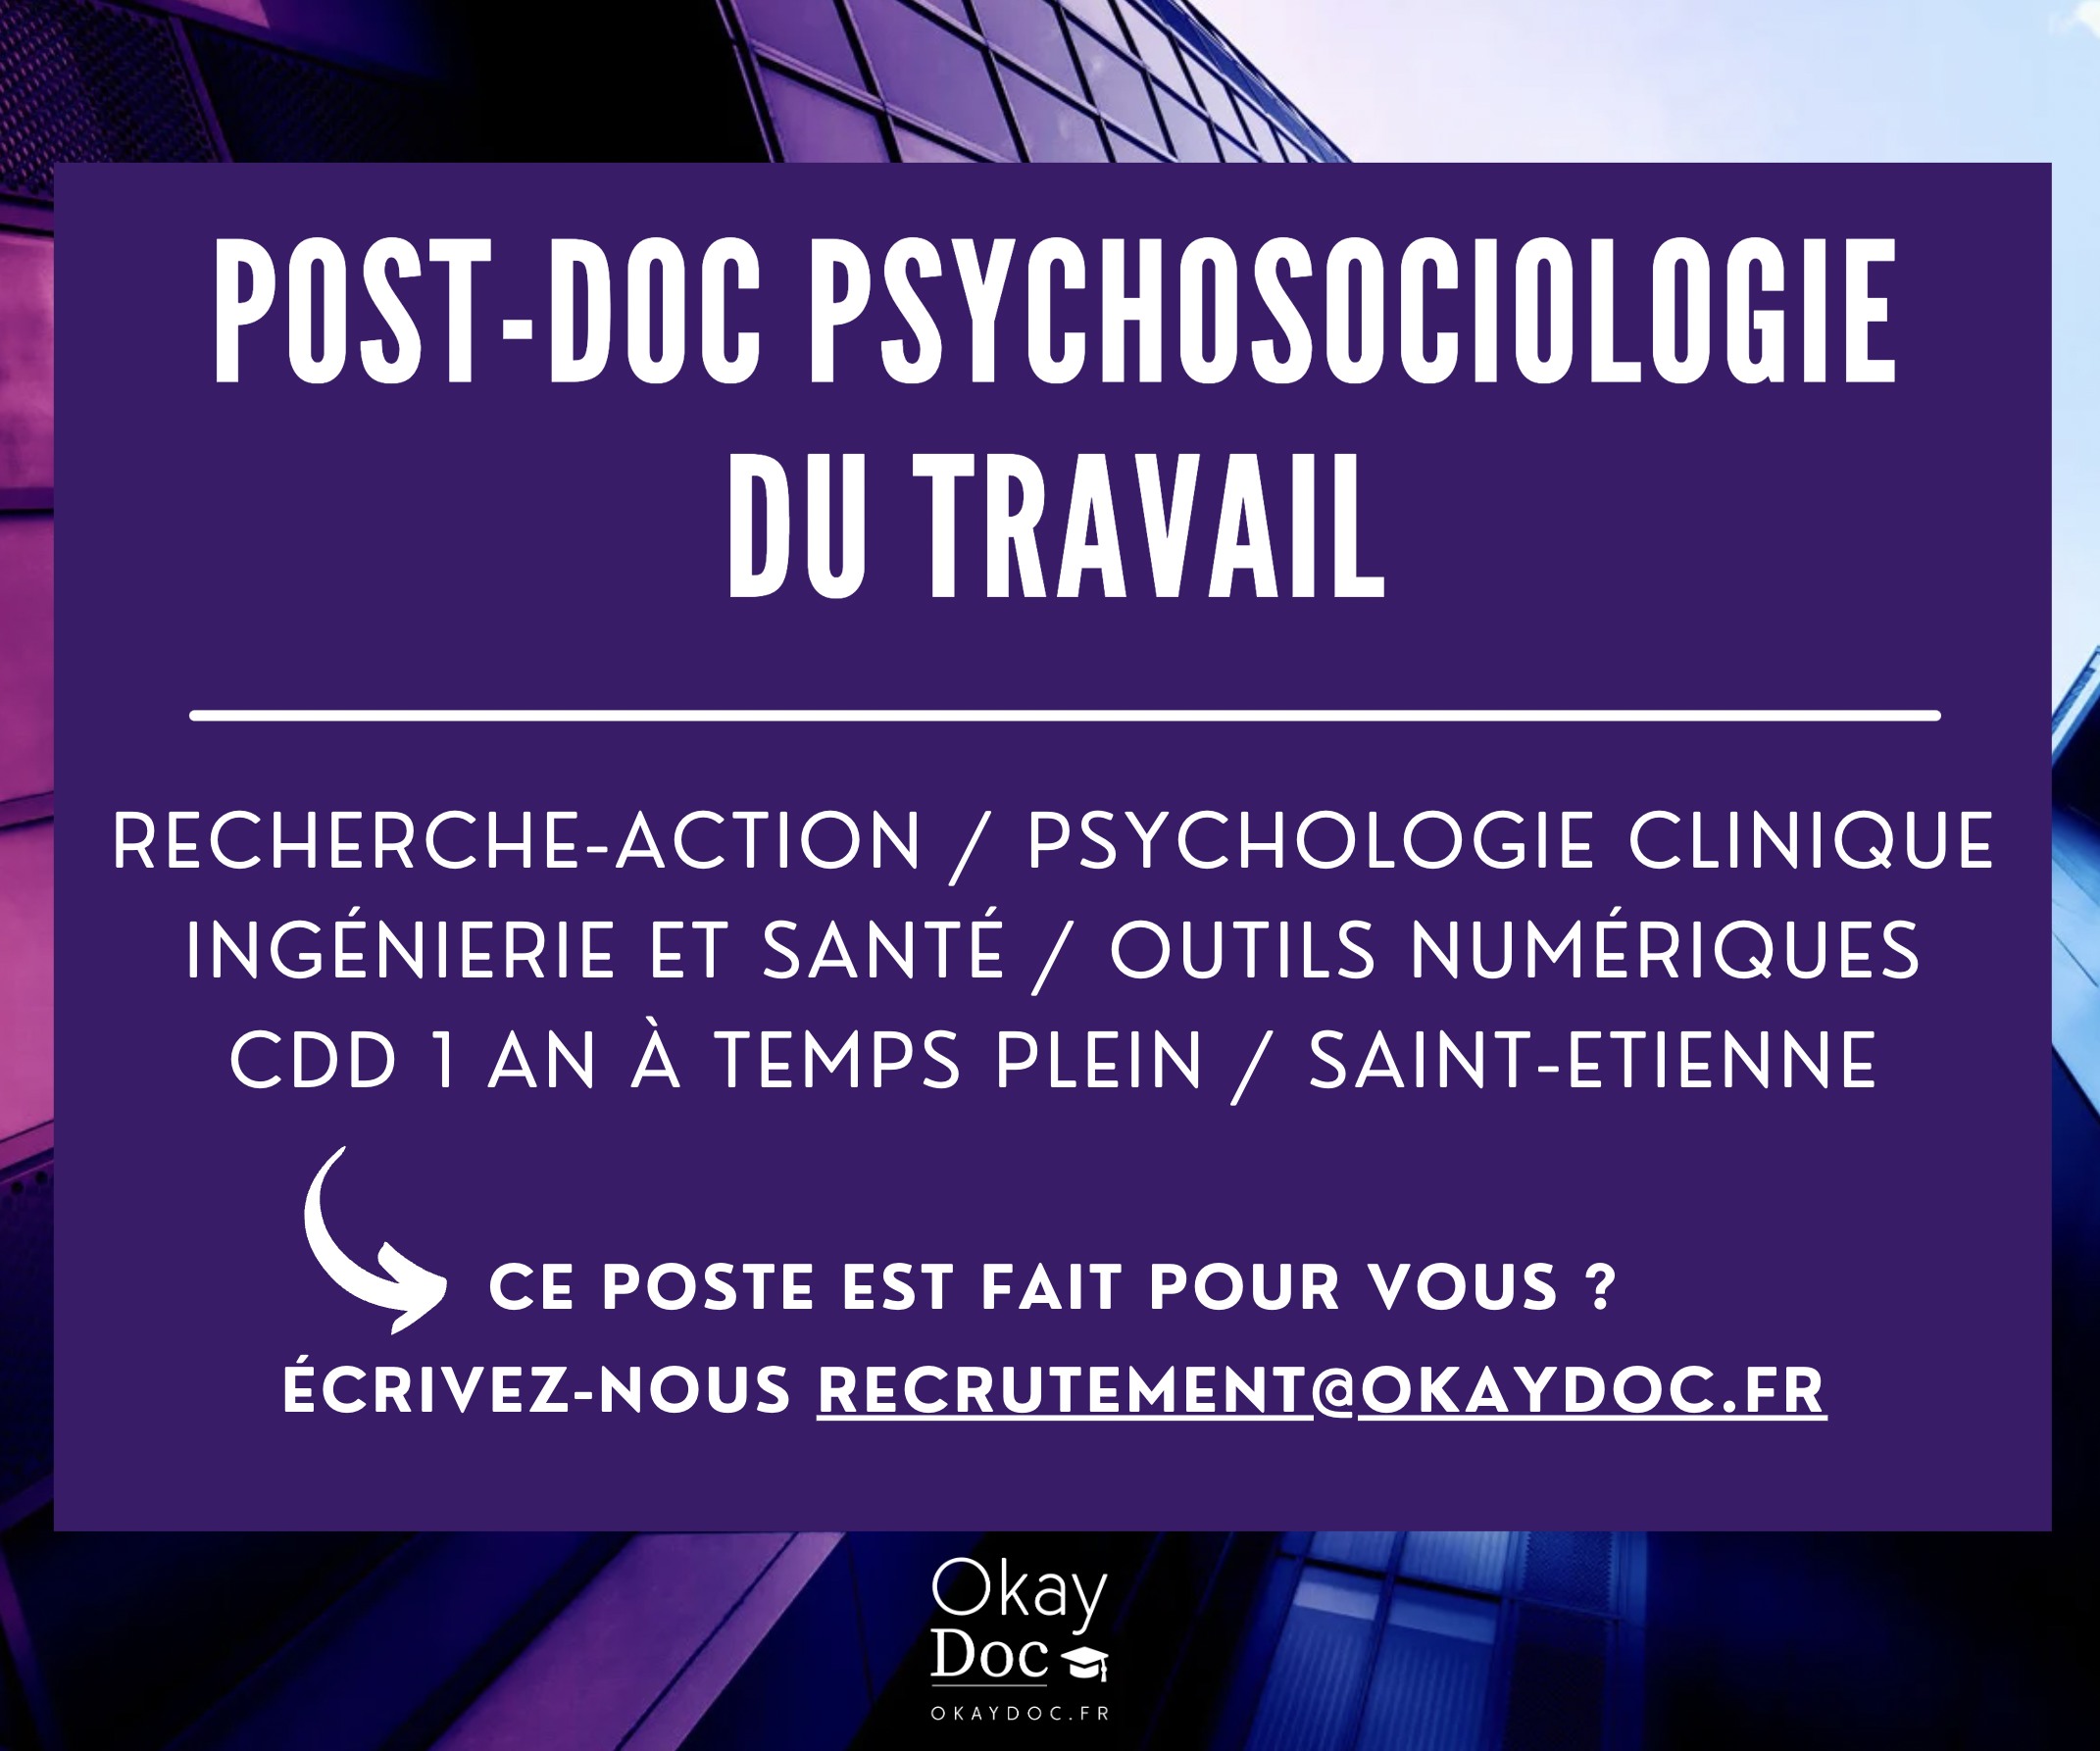 Post doc psychosociologie du travail